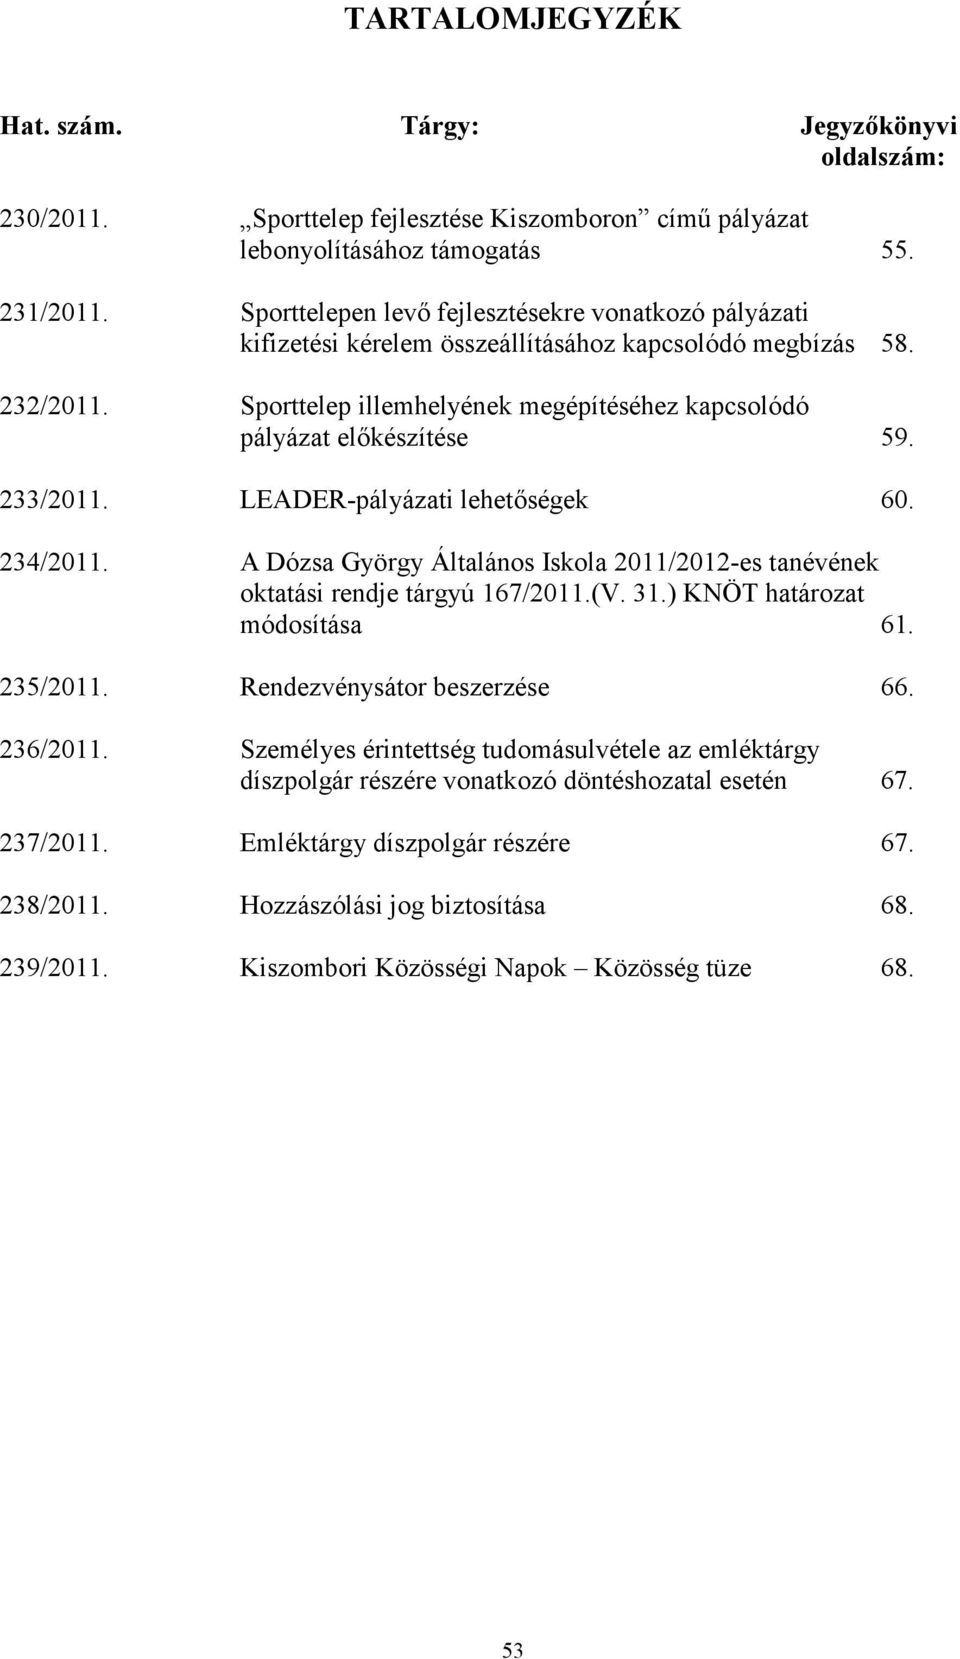 233/2011. LEADER-pályázati lehetıségek 60. 234/2011. A Dózsa György Általános Iskola 2011/2012-es tanévének oktatási rendje tárgyú 167/2011.(V. 31.) KNÖT határozat módosítása 61. 235/2011.